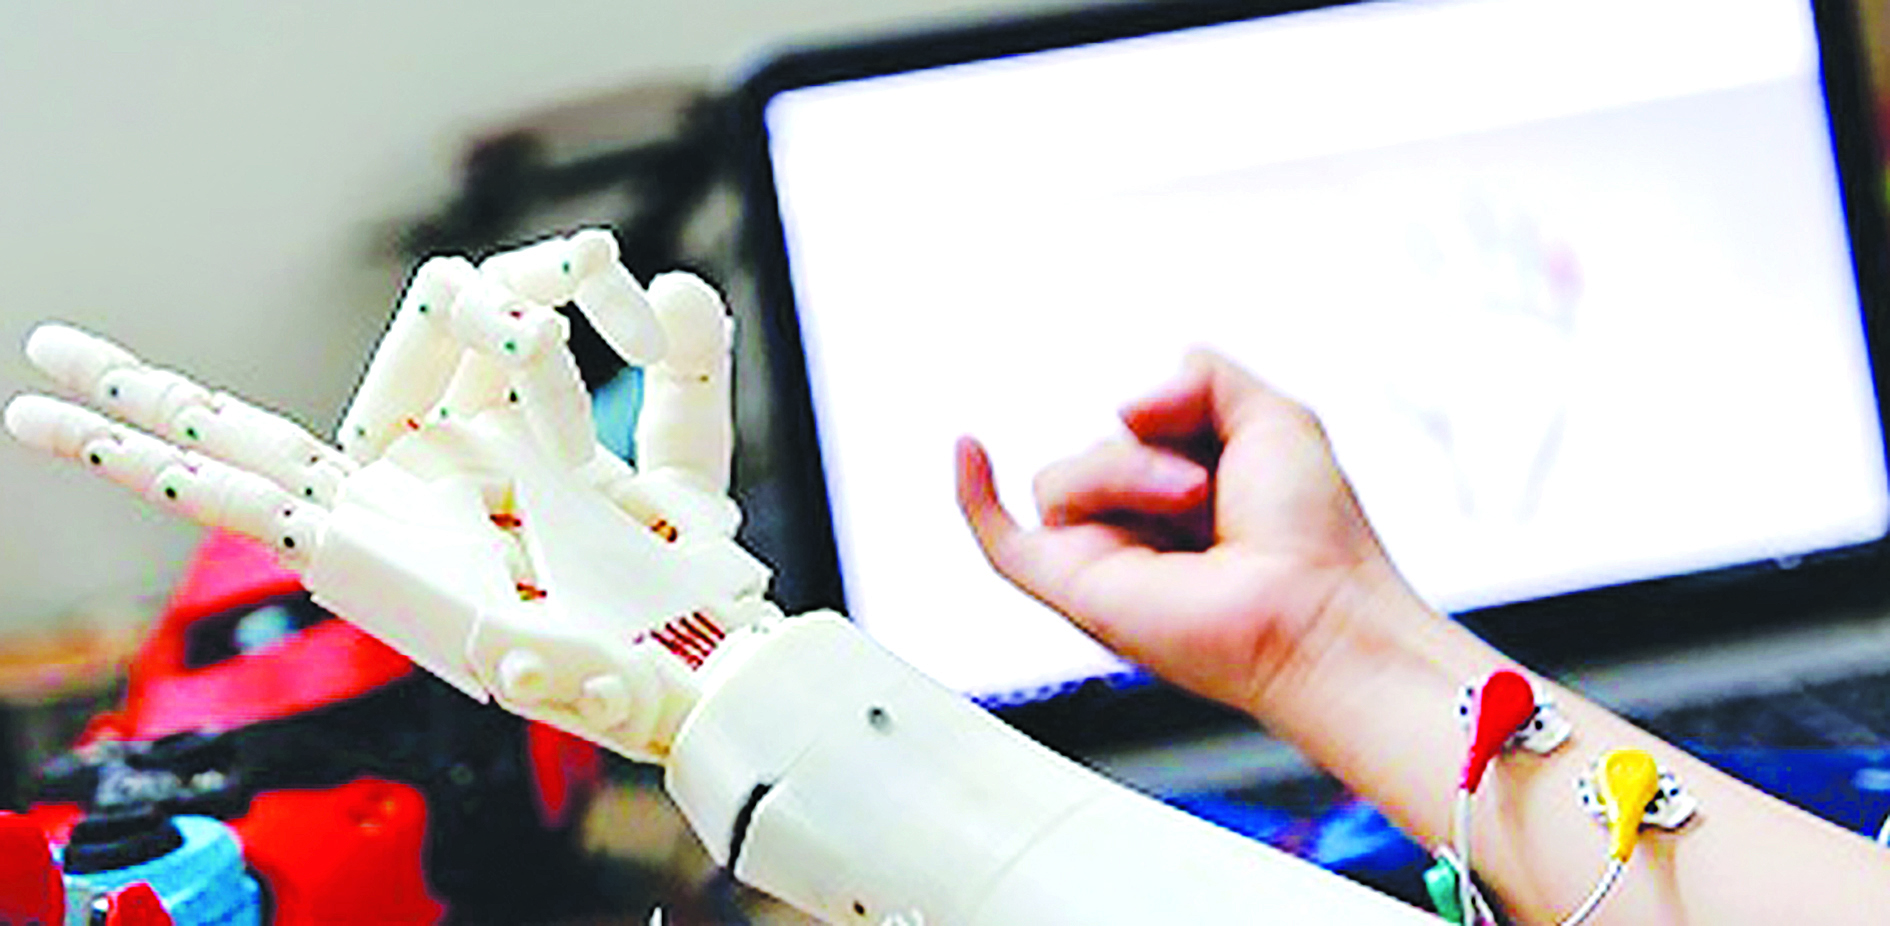 Mặc dù công nghệ in 3D đã có mặt trong khá nhiều lĩnh vực ở Việt Nam nhưng theo các chuyên gia, việc ứng dụng vẫn chủ yếu mang tính chất thử nghiệm. Trong ảnh: Thử nghiệm cánh tay điều khiển bằng suy nghĩ được làm từ công nghệ in 3D của Công ty TNHH 3D Master. Ảnh: Loan Lê